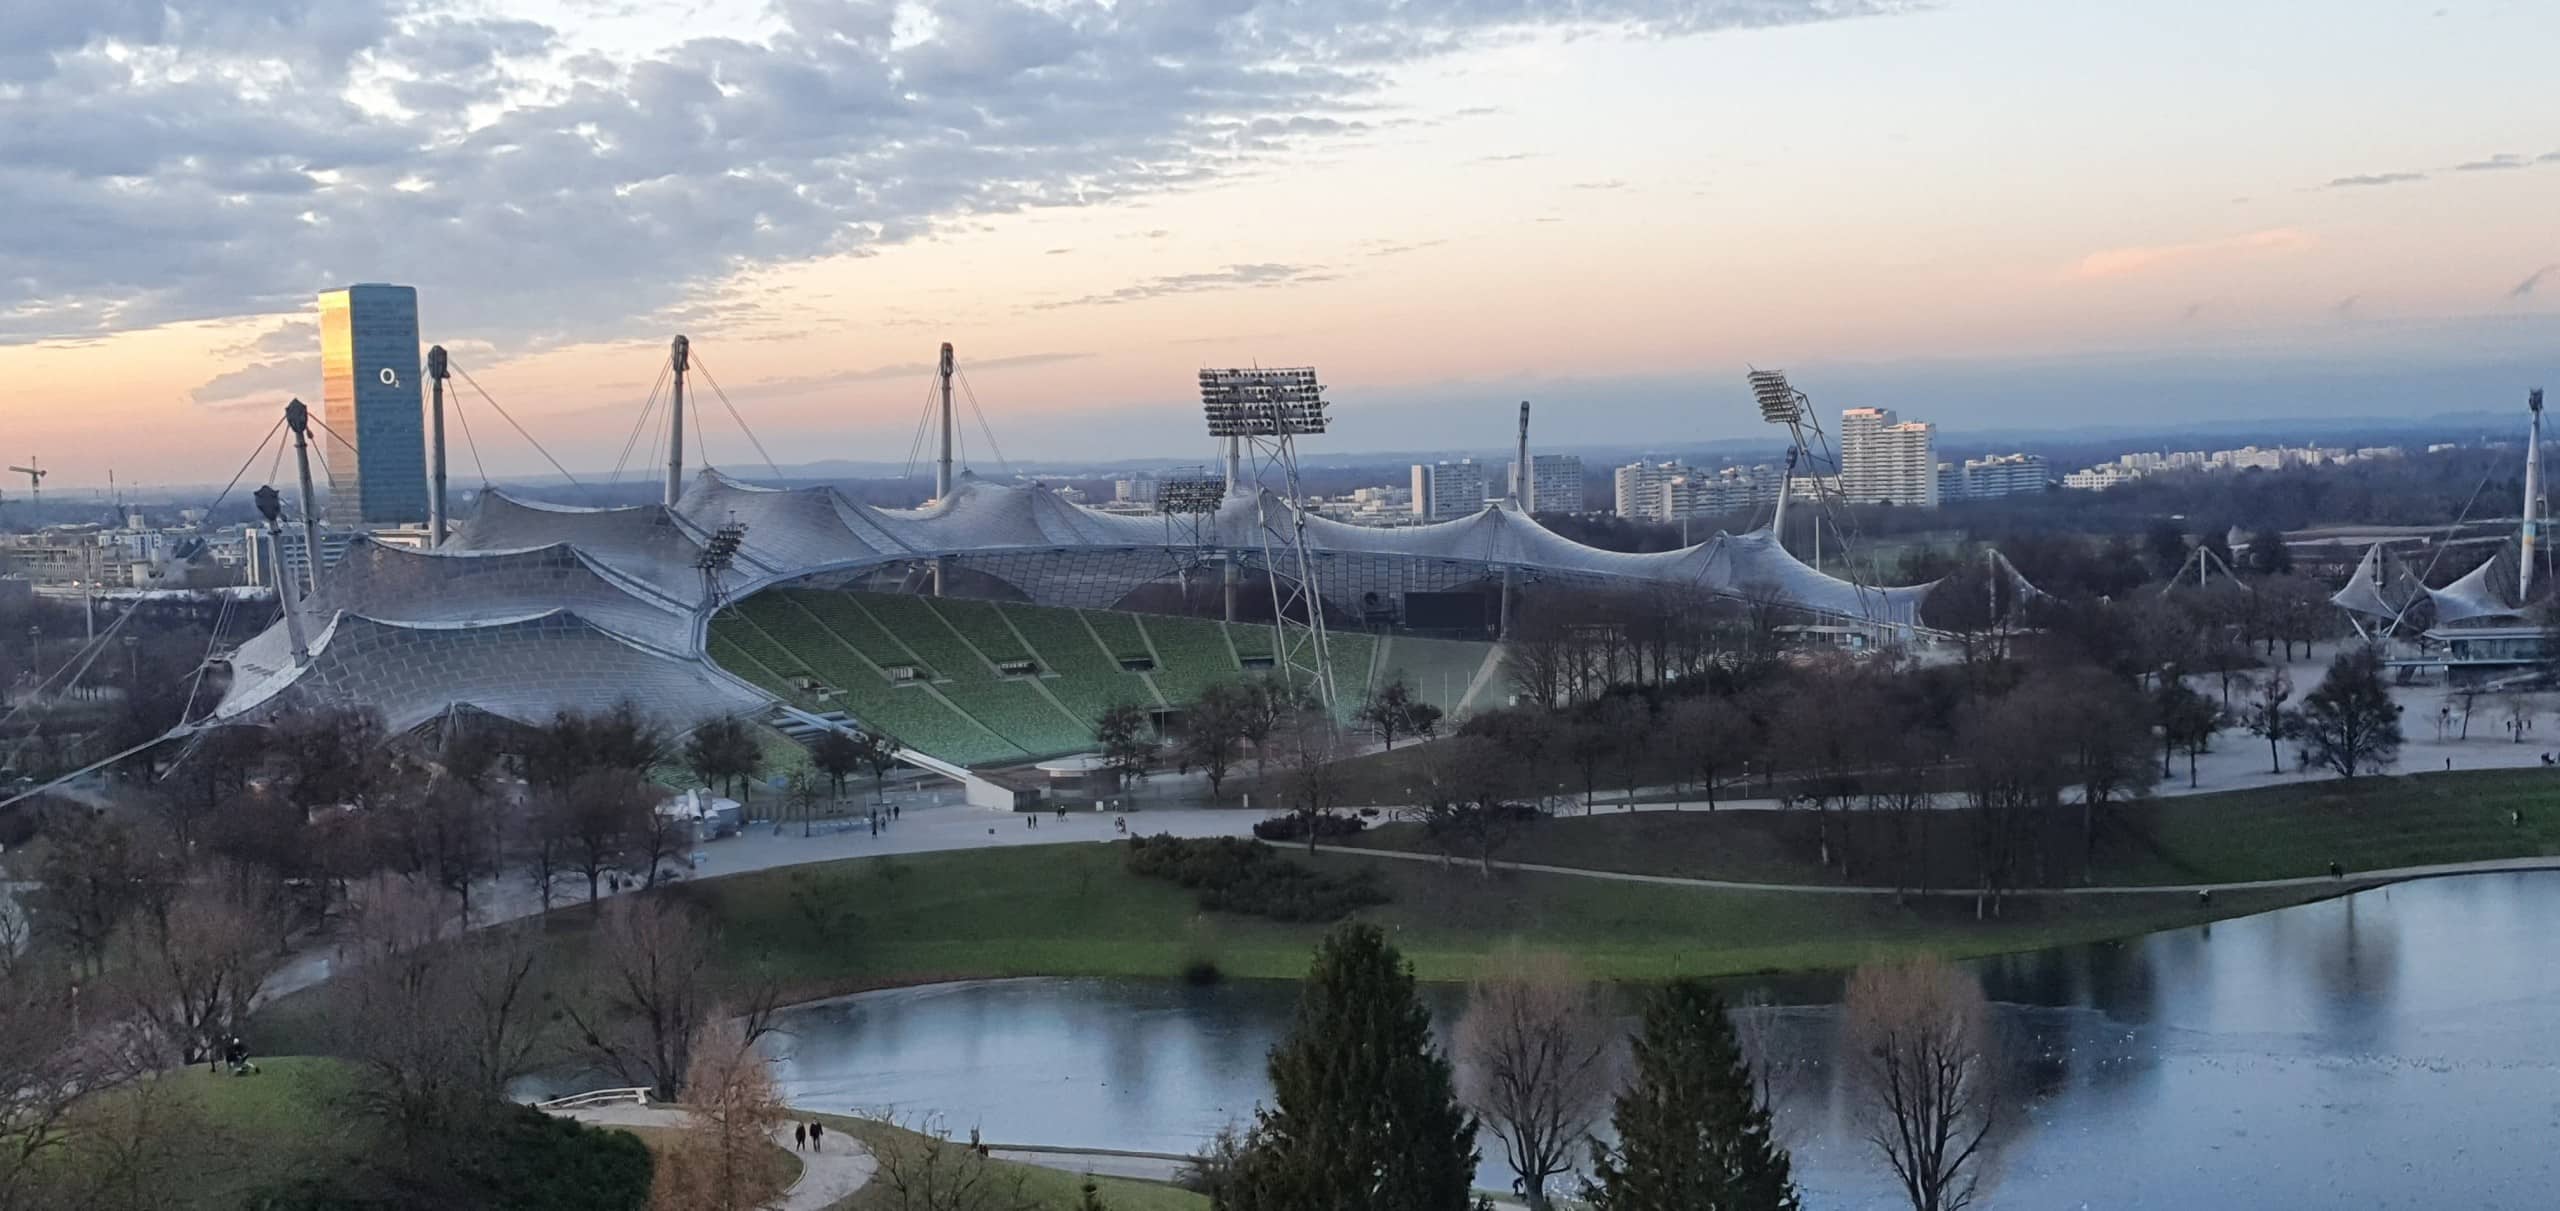 Das berühmte Zeltdach das Münchner Olympiastadions ist bis heute ein architektonisches Highlight der Stadt. Bildquelle: Pxfuel